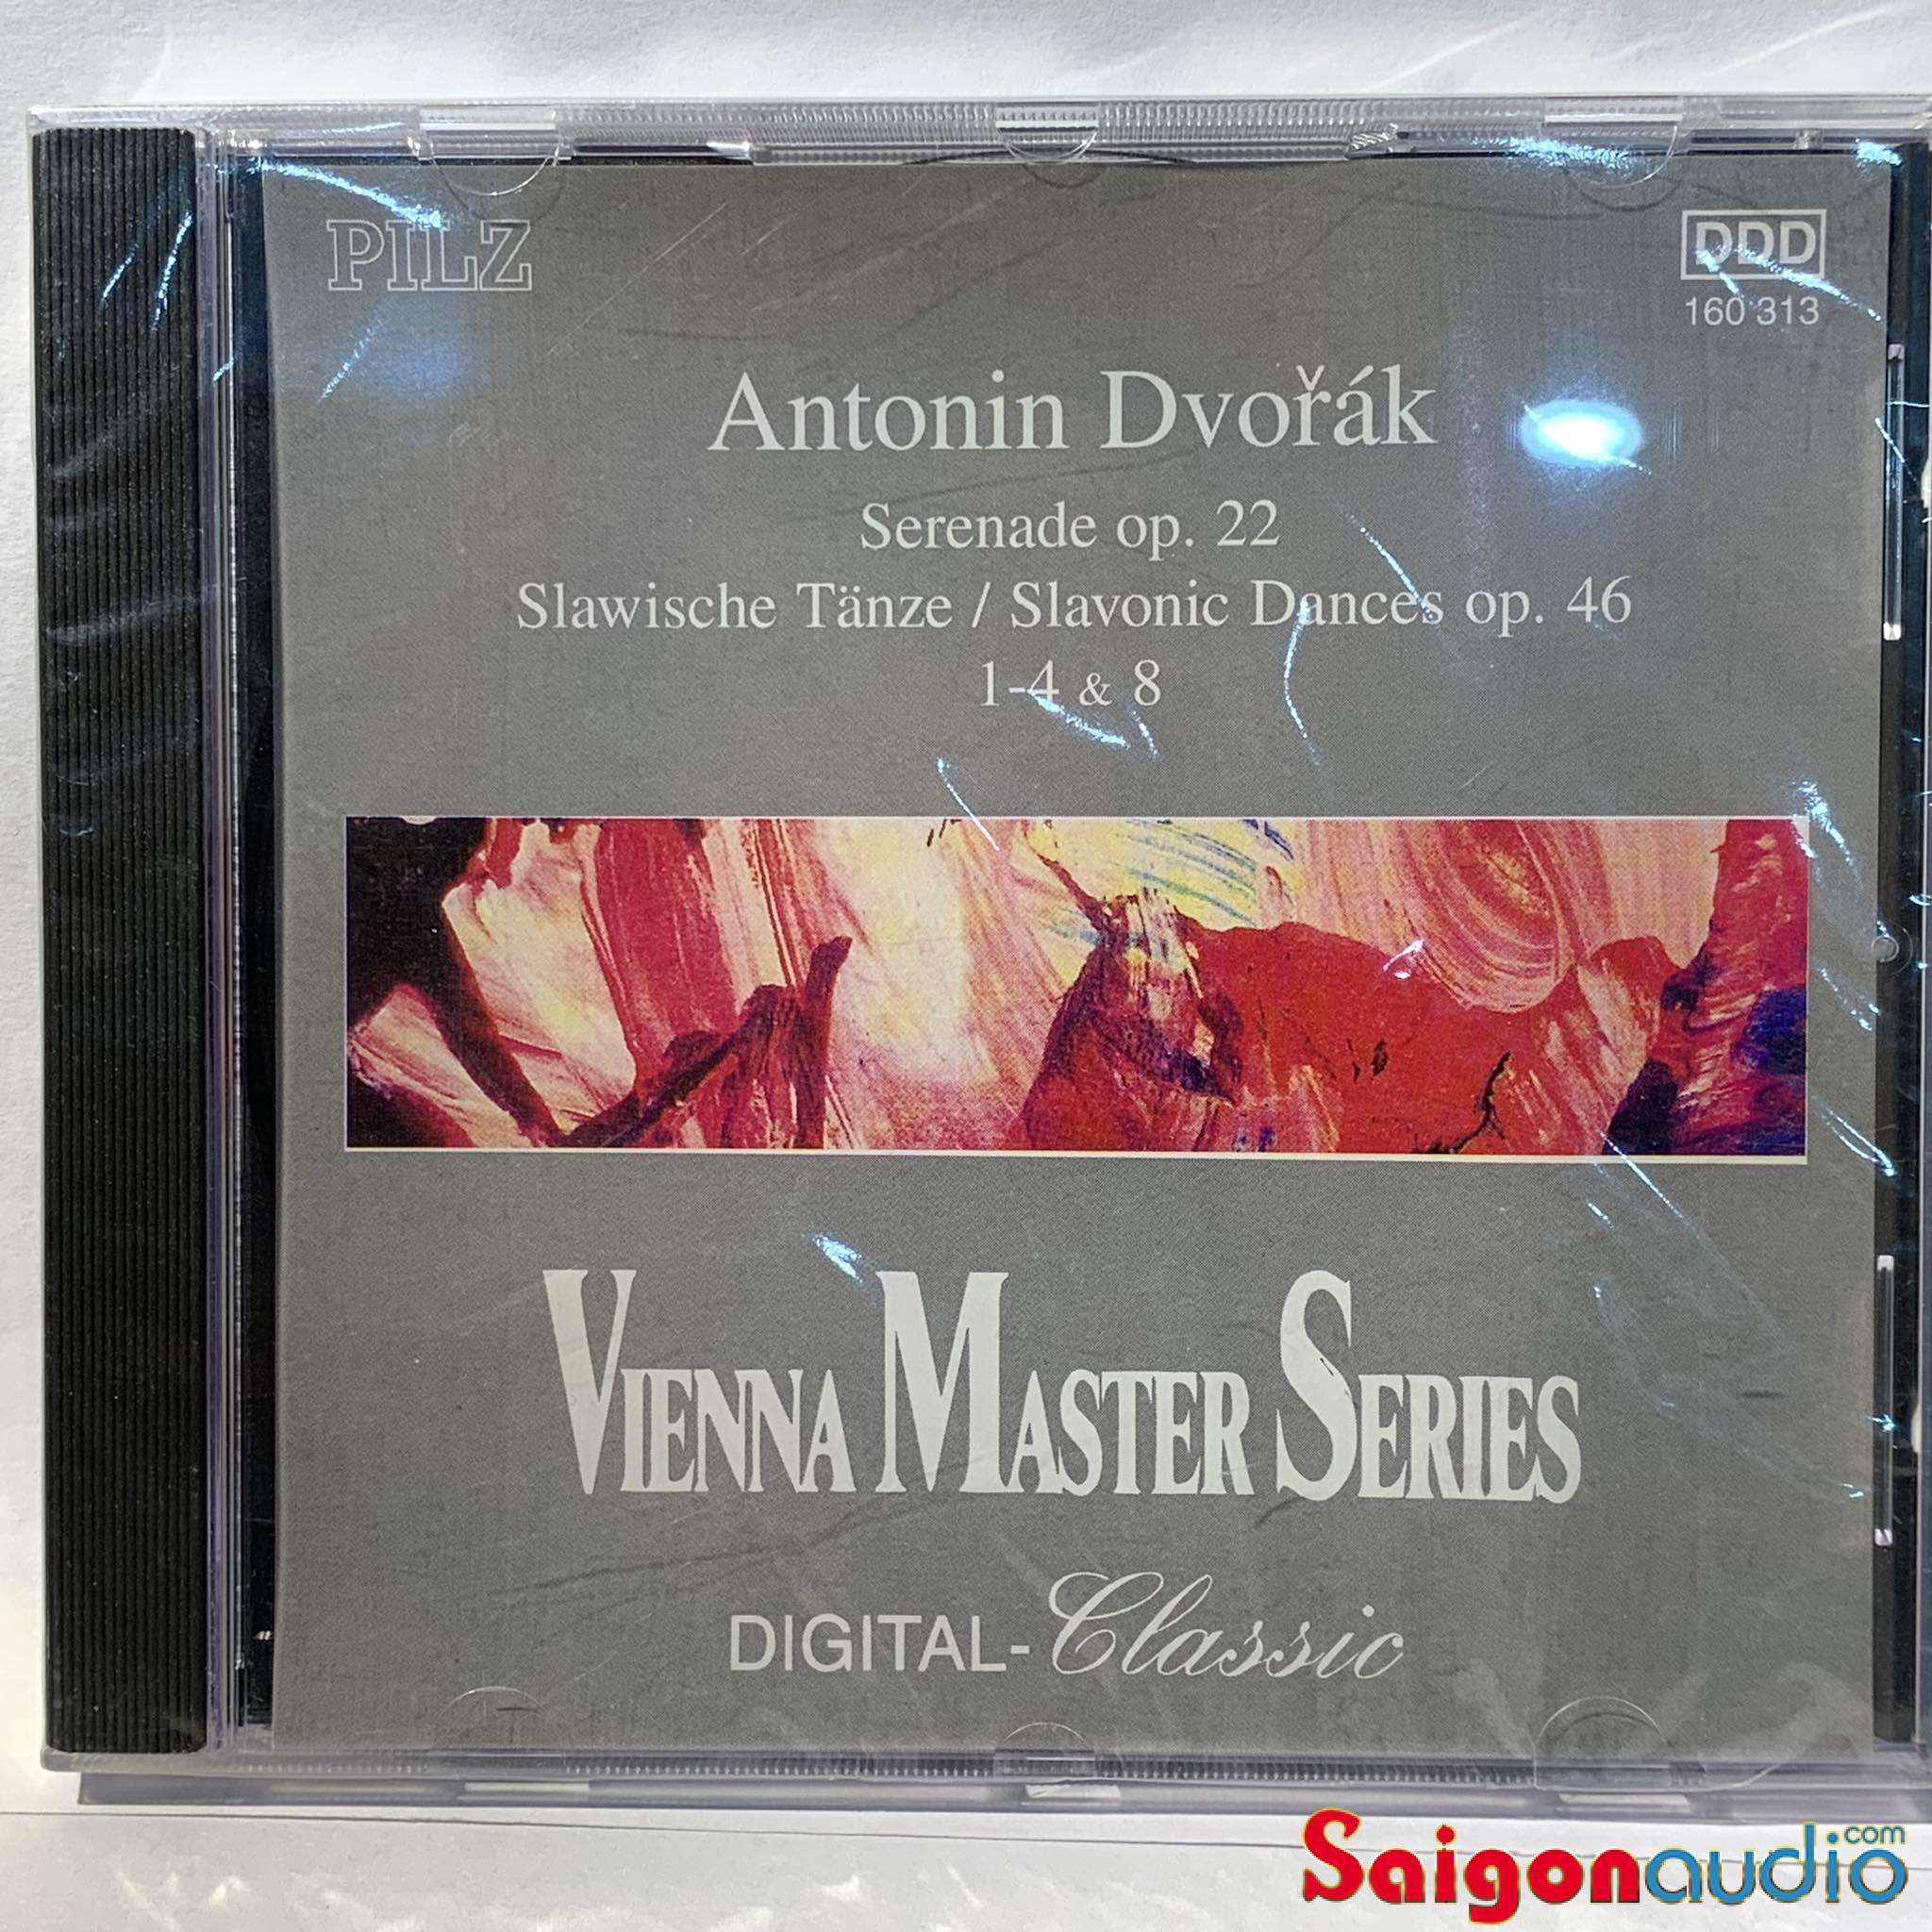 Đĩa CD gốc nhạc cổ điển Vienna Master Series Digital Classic Antonin Dvorak Stabat Mater CD Pilz (Free ship khi mua 2 đĩa CD cùng hoặc khác loại)